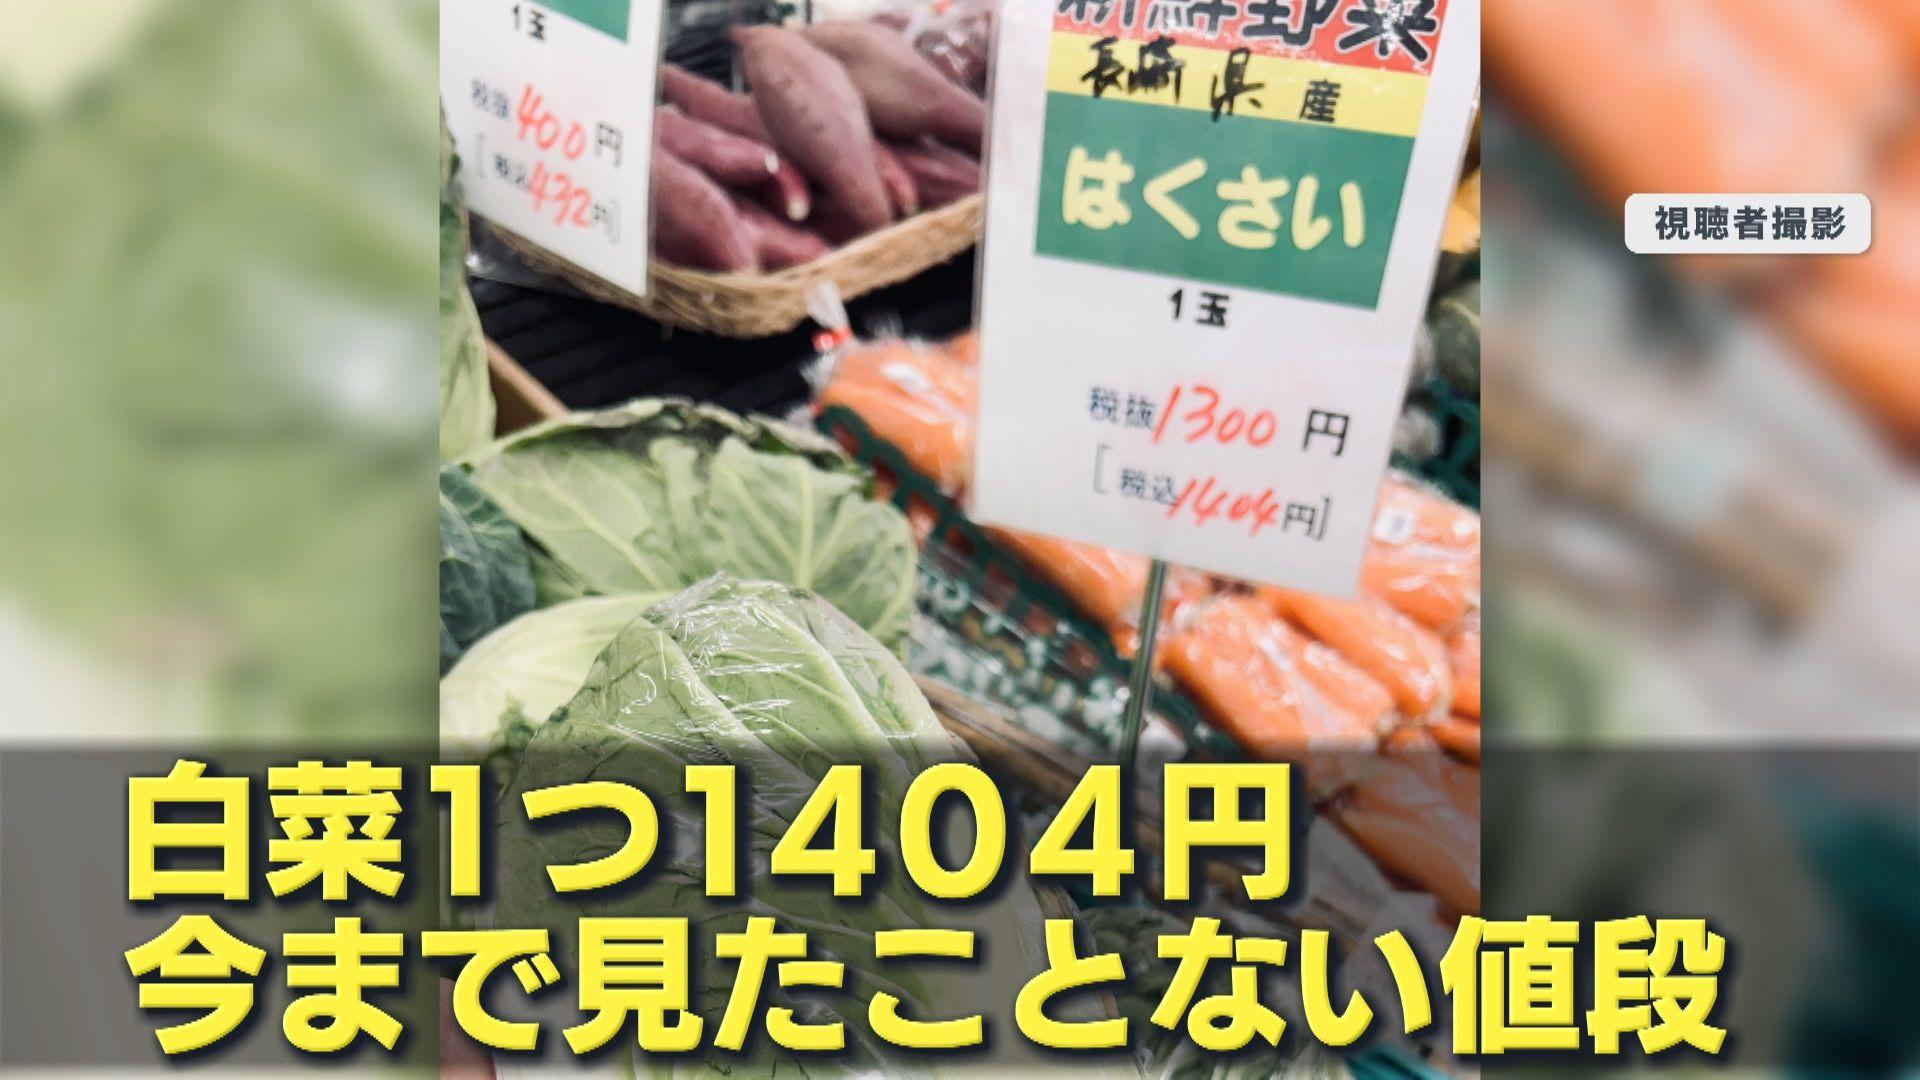 め8野菜高騰2